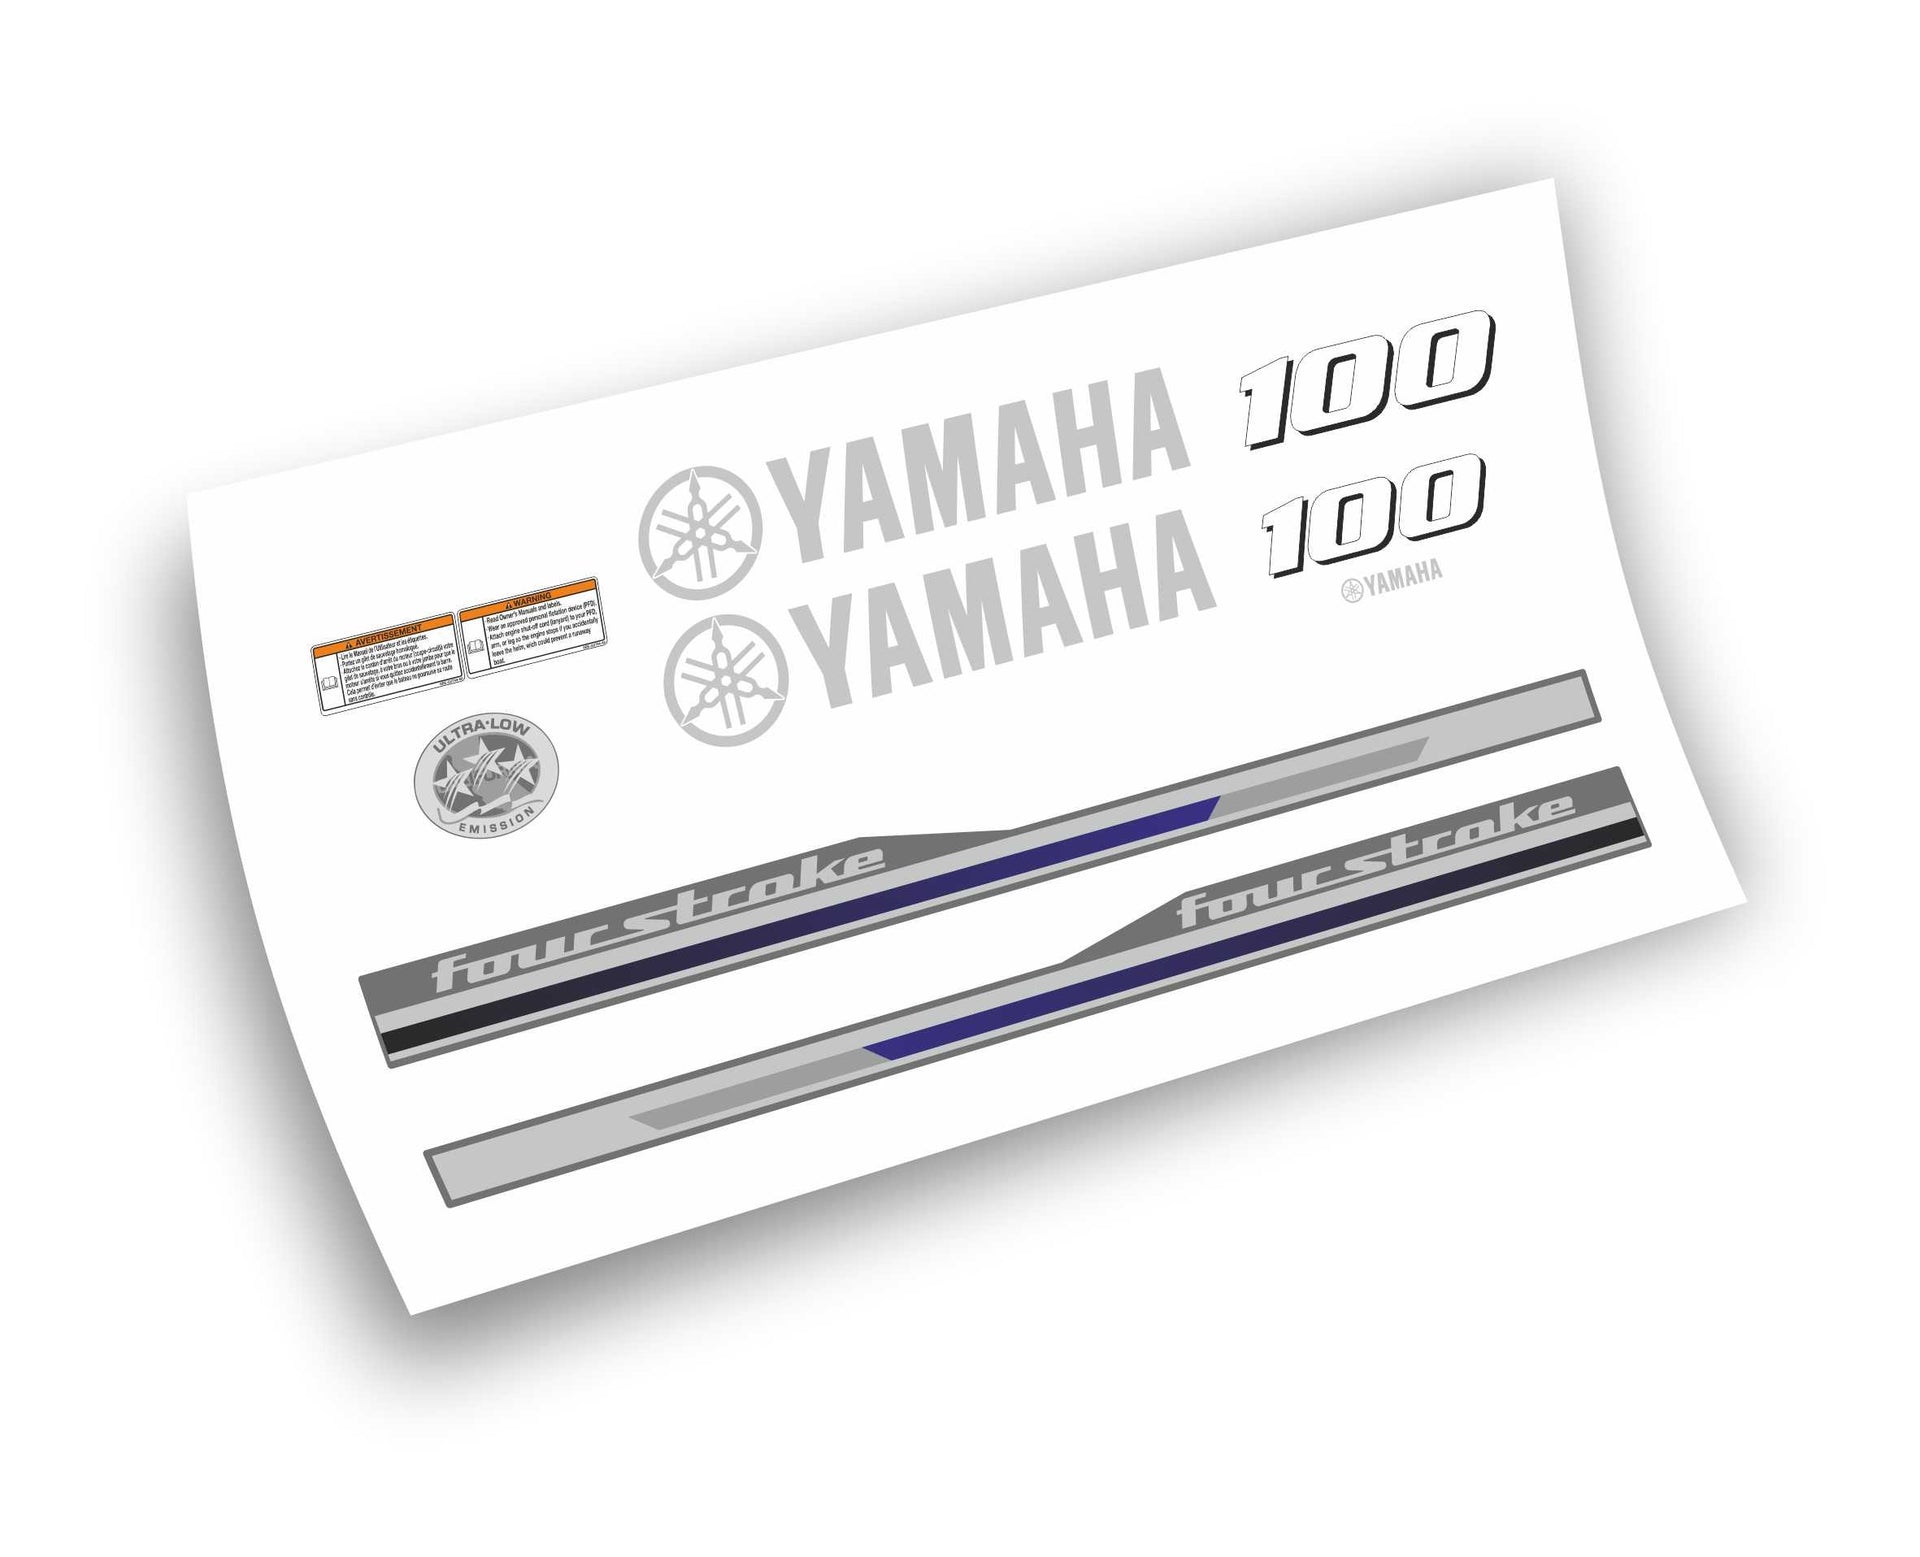 Yamaha Four Stroke 100 HP adesivi sticker motoscafo barca motore fuori – L' adesivo.com